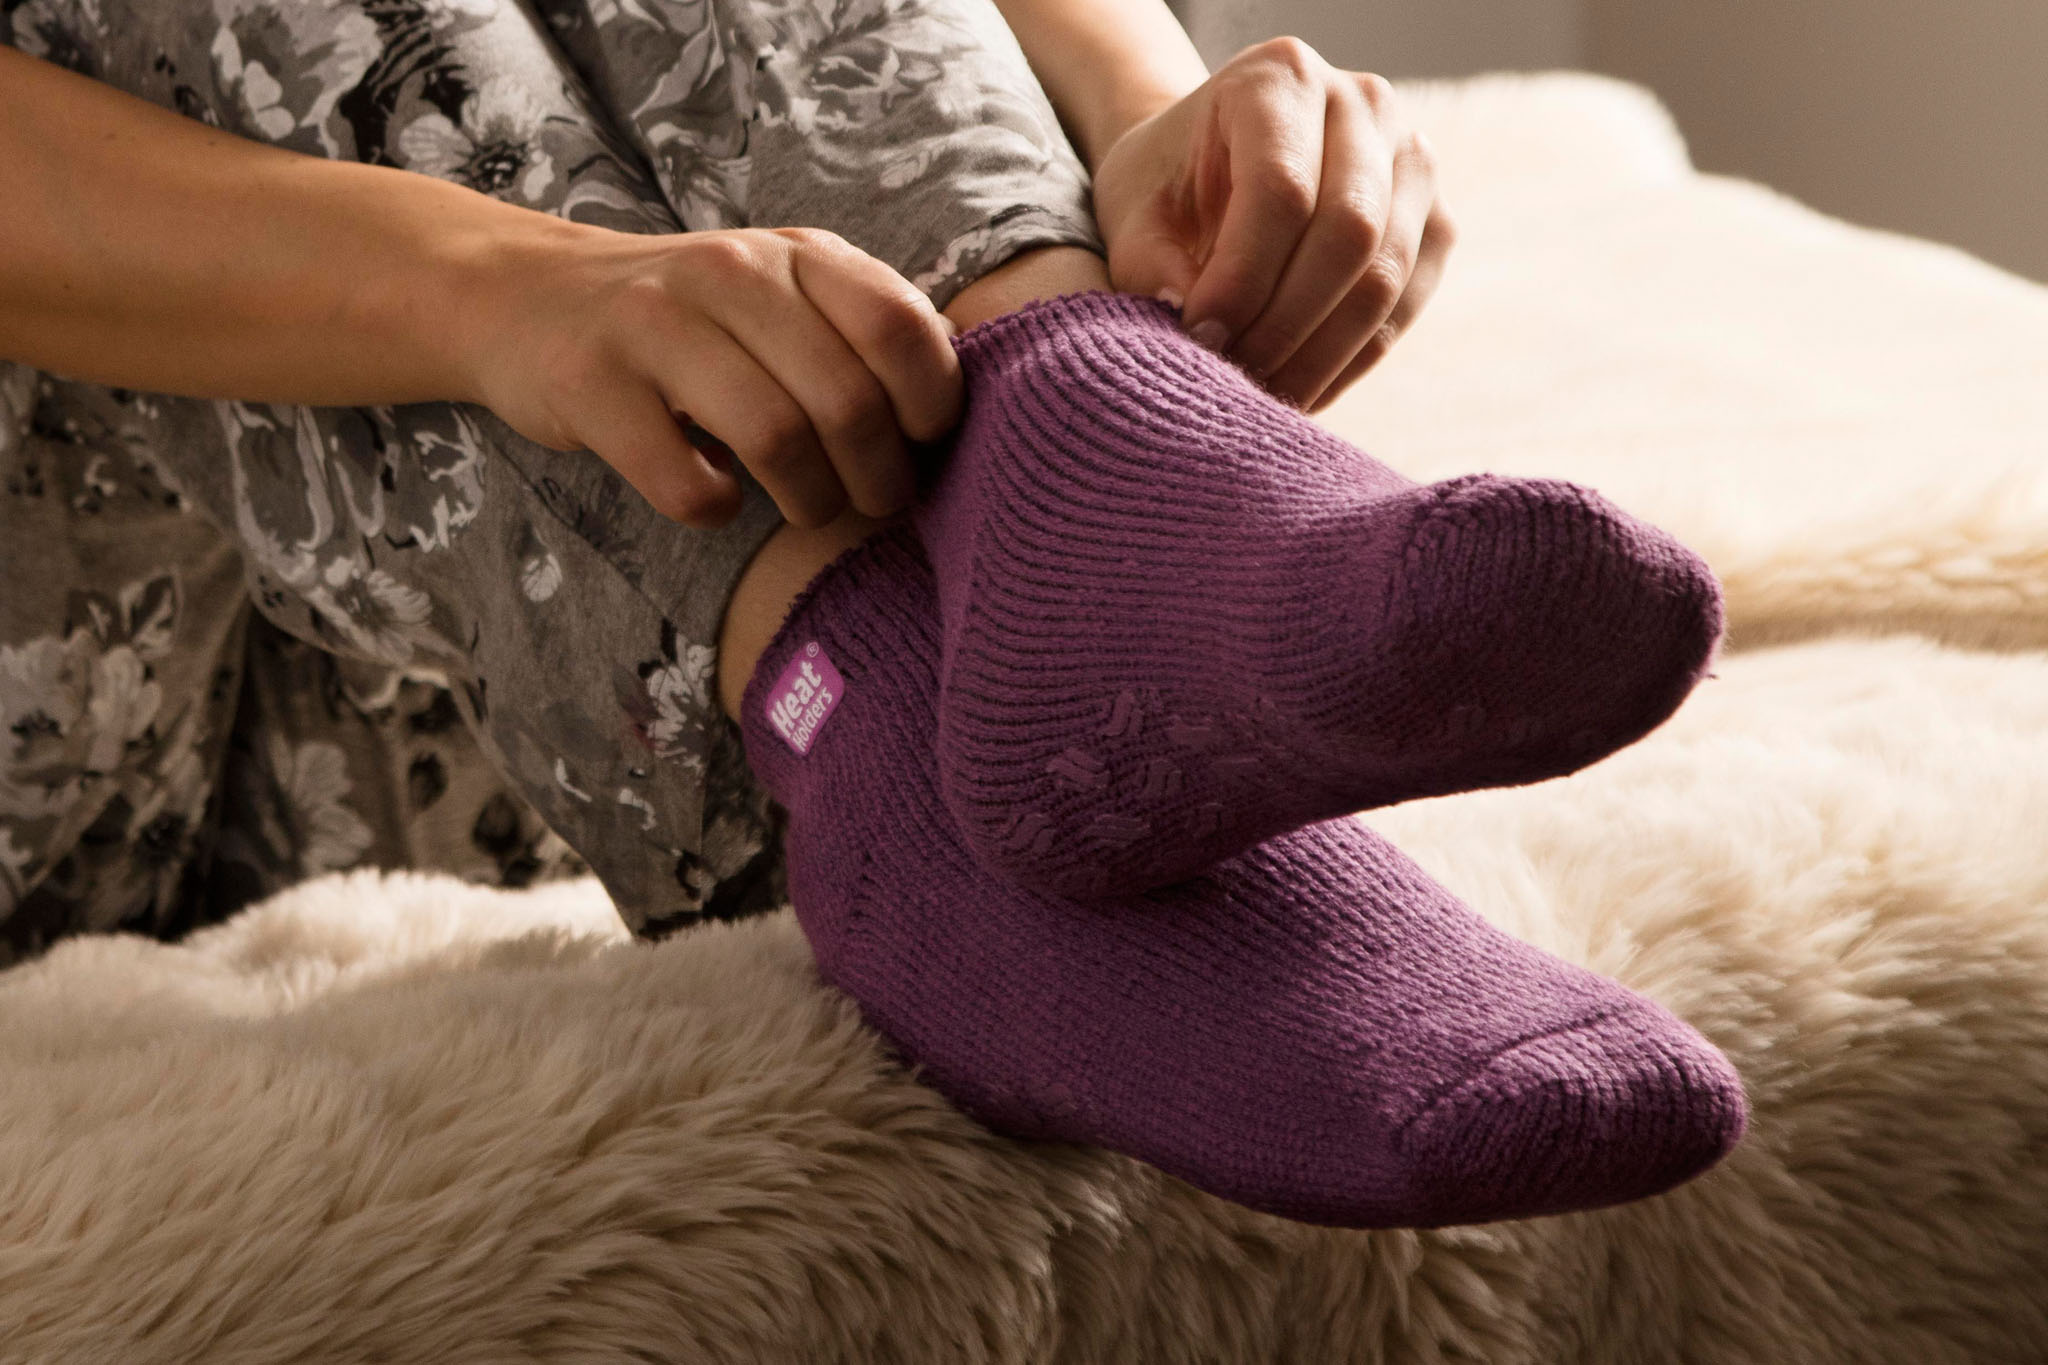 HEAT HOLDERS - Ladies low cut thermal slipper ankle socks in 4